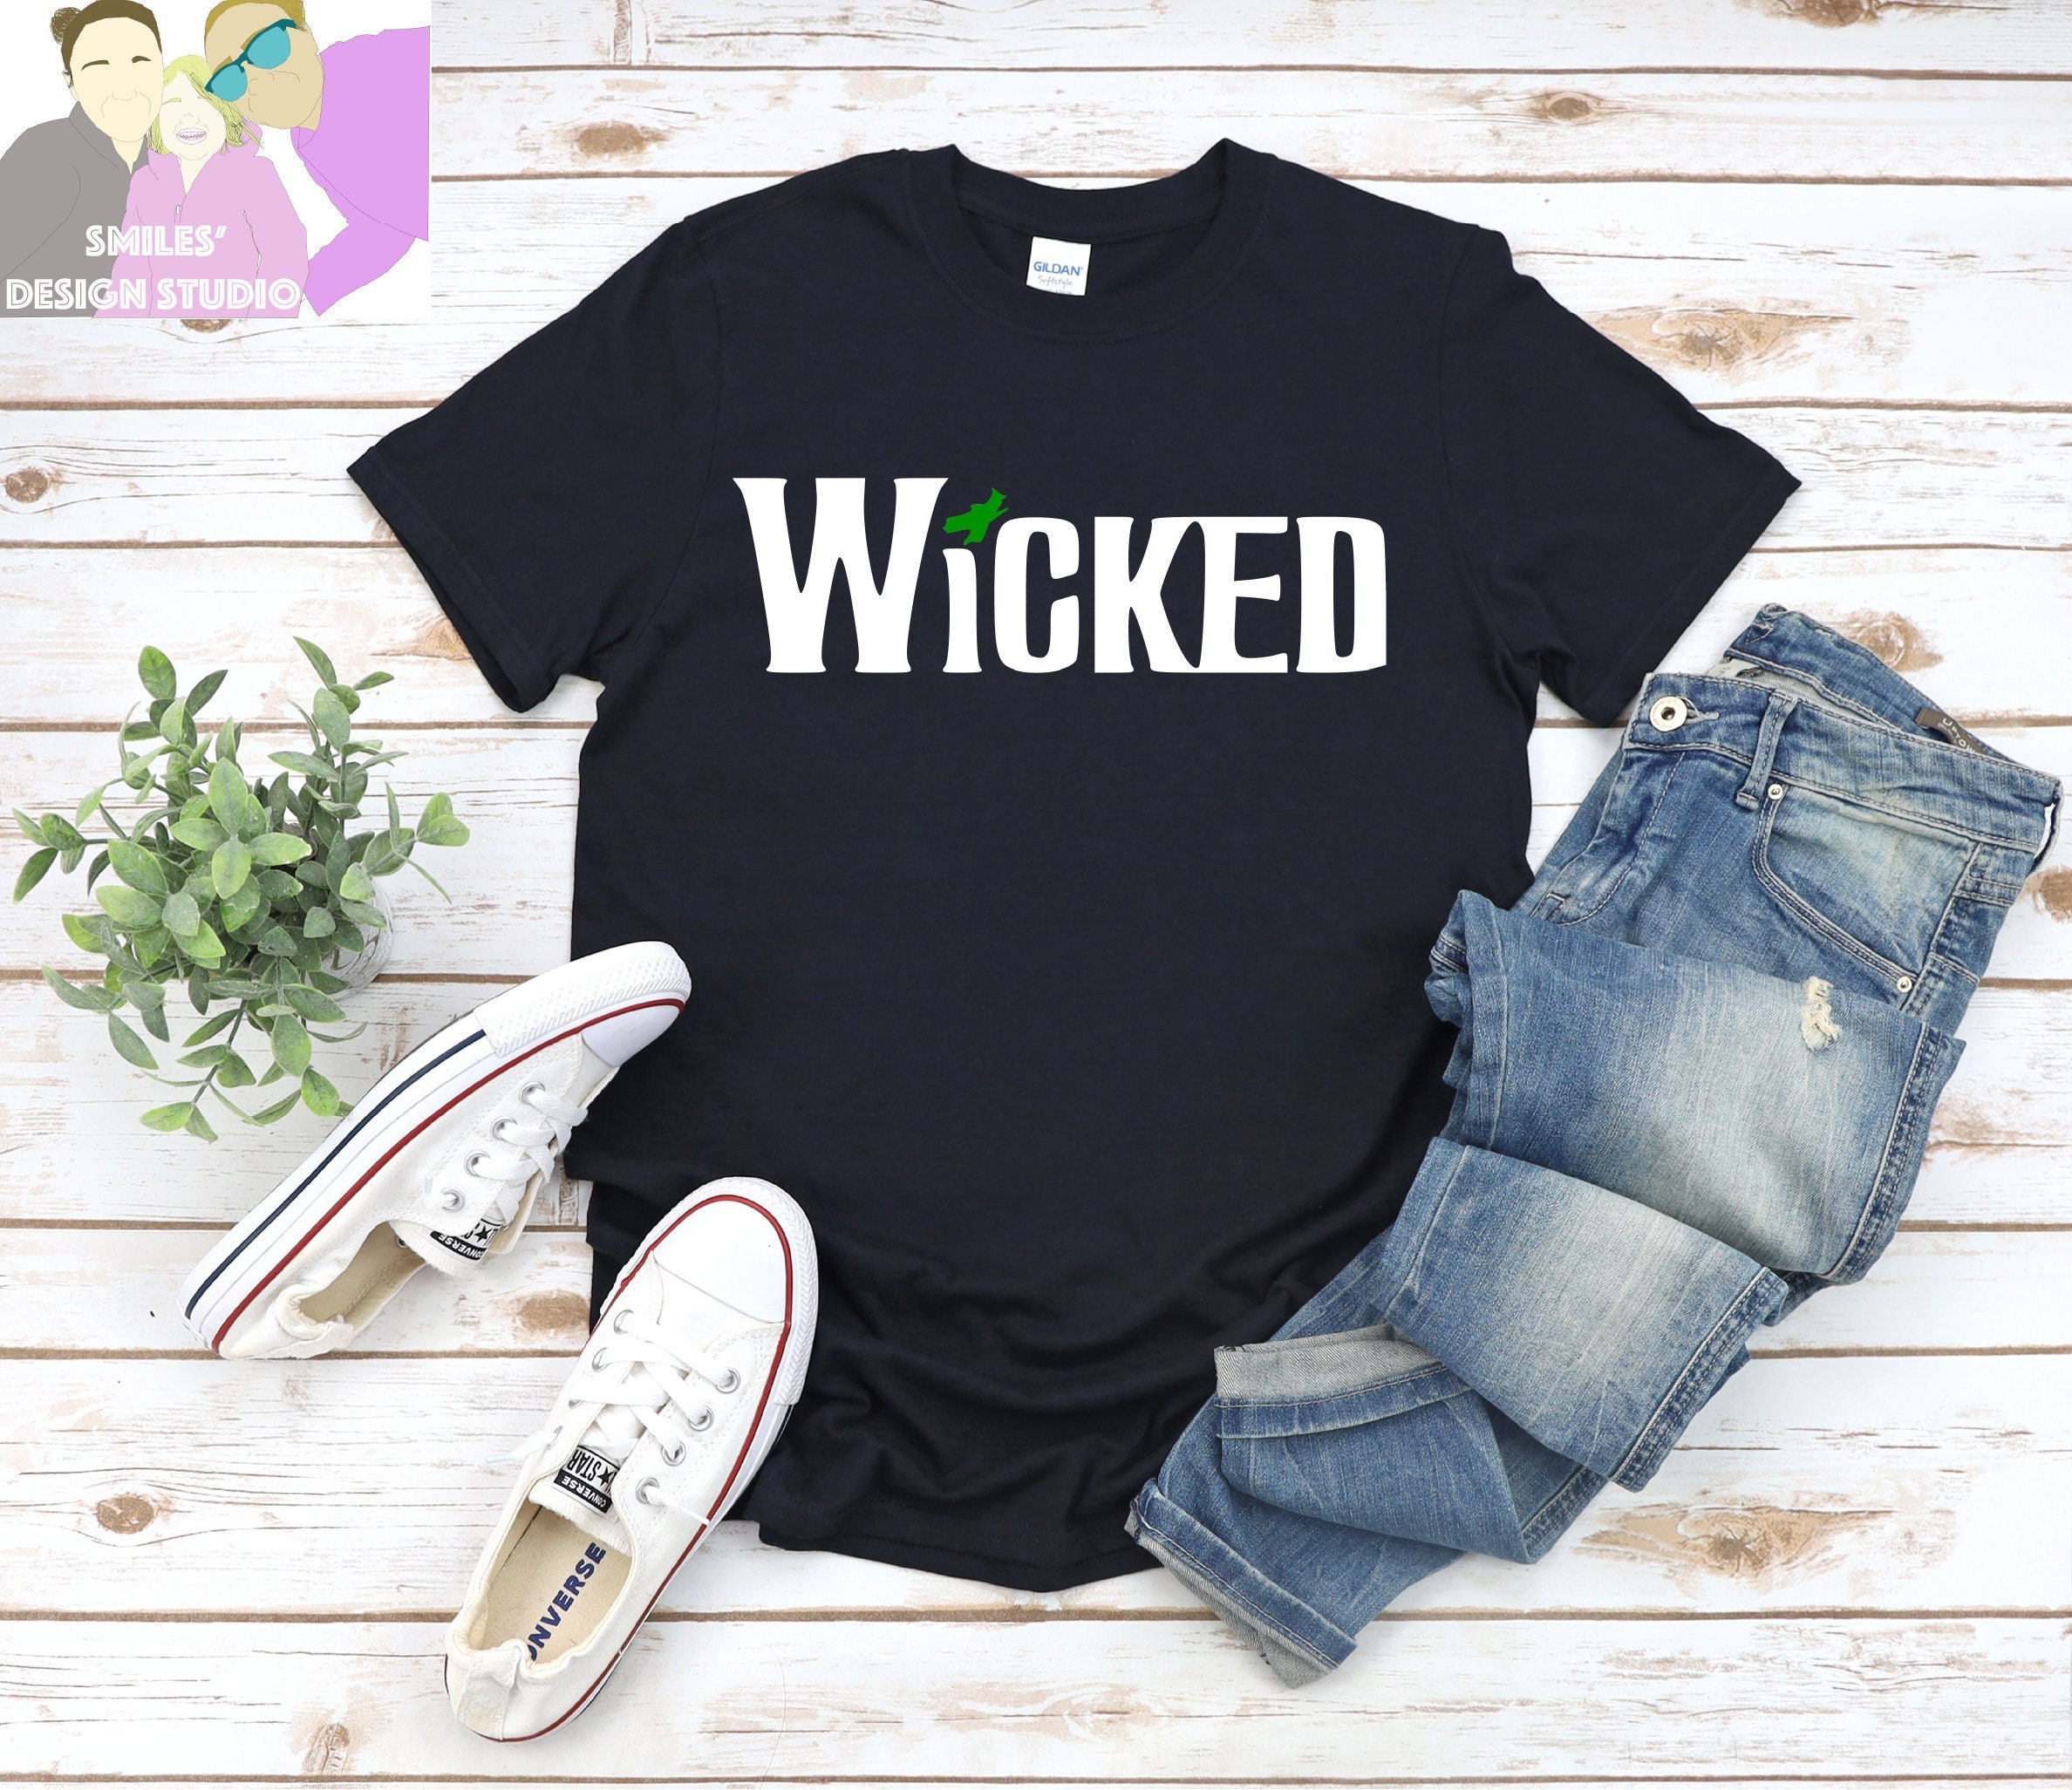 SmilesDesignStudio Wicked Logo Inspired T-Shirt, Wicked Shirt, Wicked: The Musical Shirt, Customizable